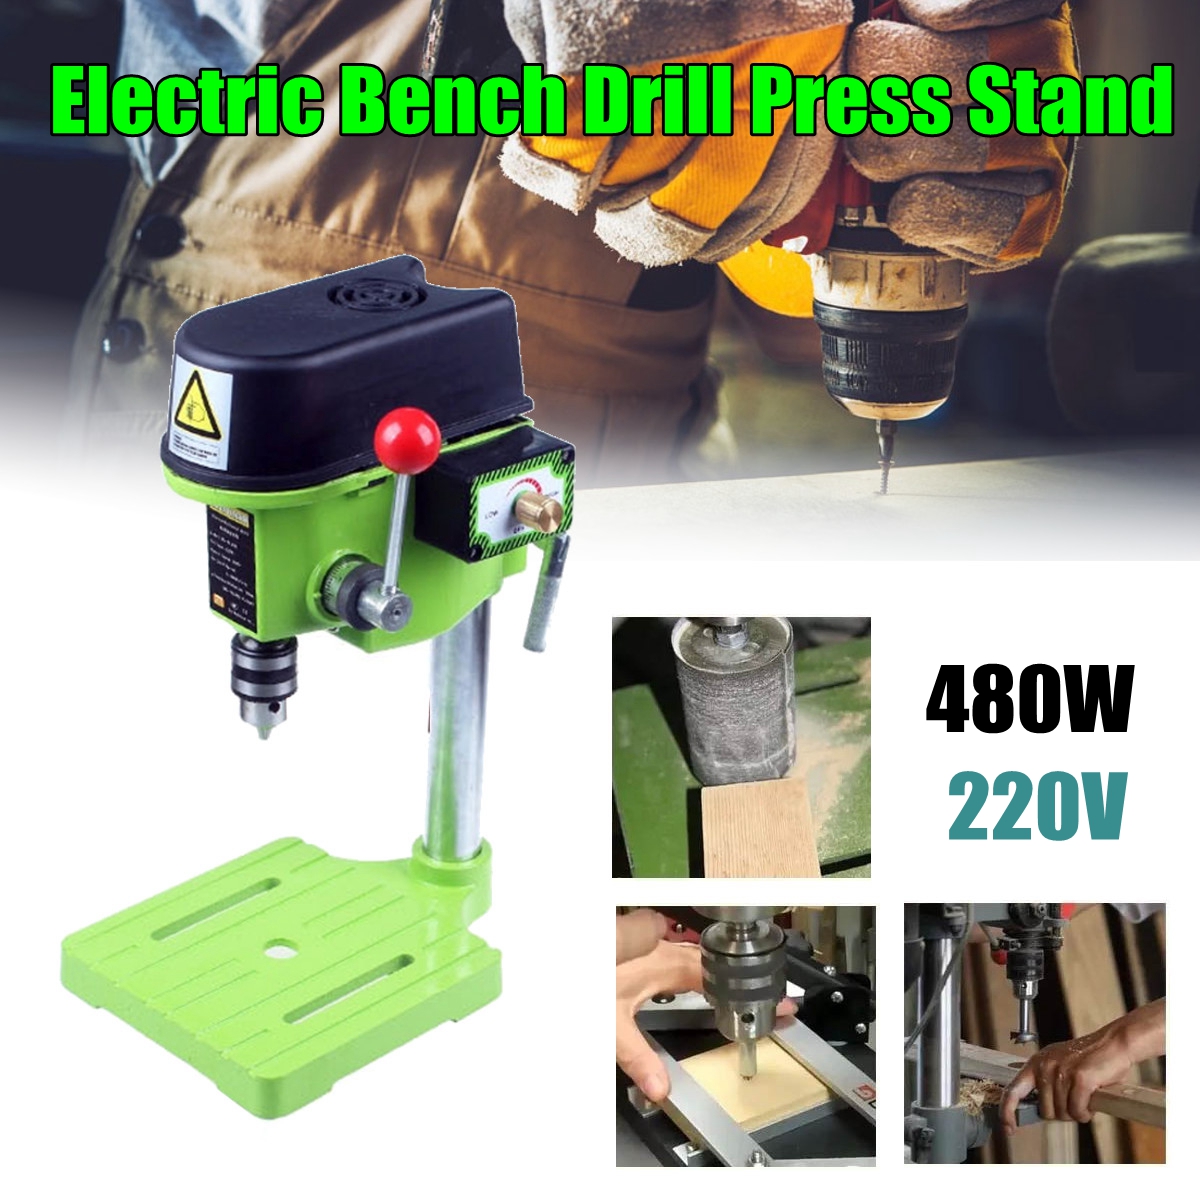 MINIQ-BG-5159A-480W-220V-Bench-Drill-Stand-10mm-Drill-Chuck-Mini-Electric-Bench-Drilling-Machine-Dri-1295989-1